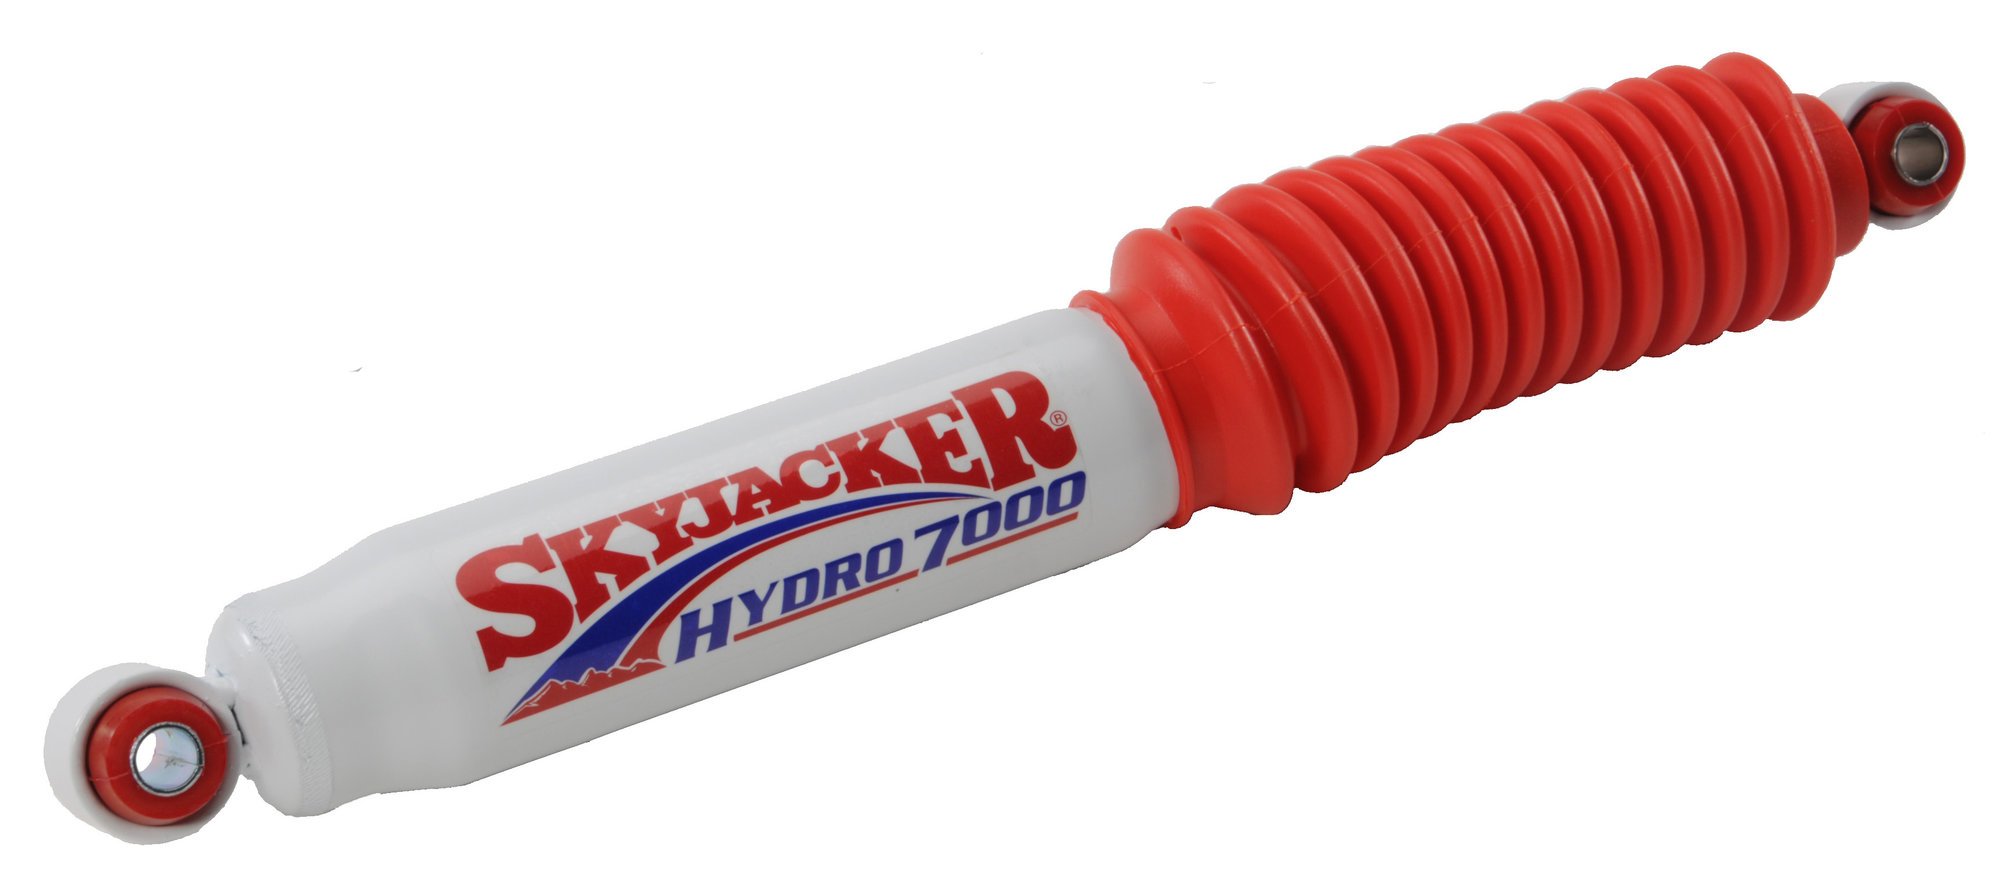 Skyjacker Hydro 7000 Rear Shock Absorber for 9904 Jeep